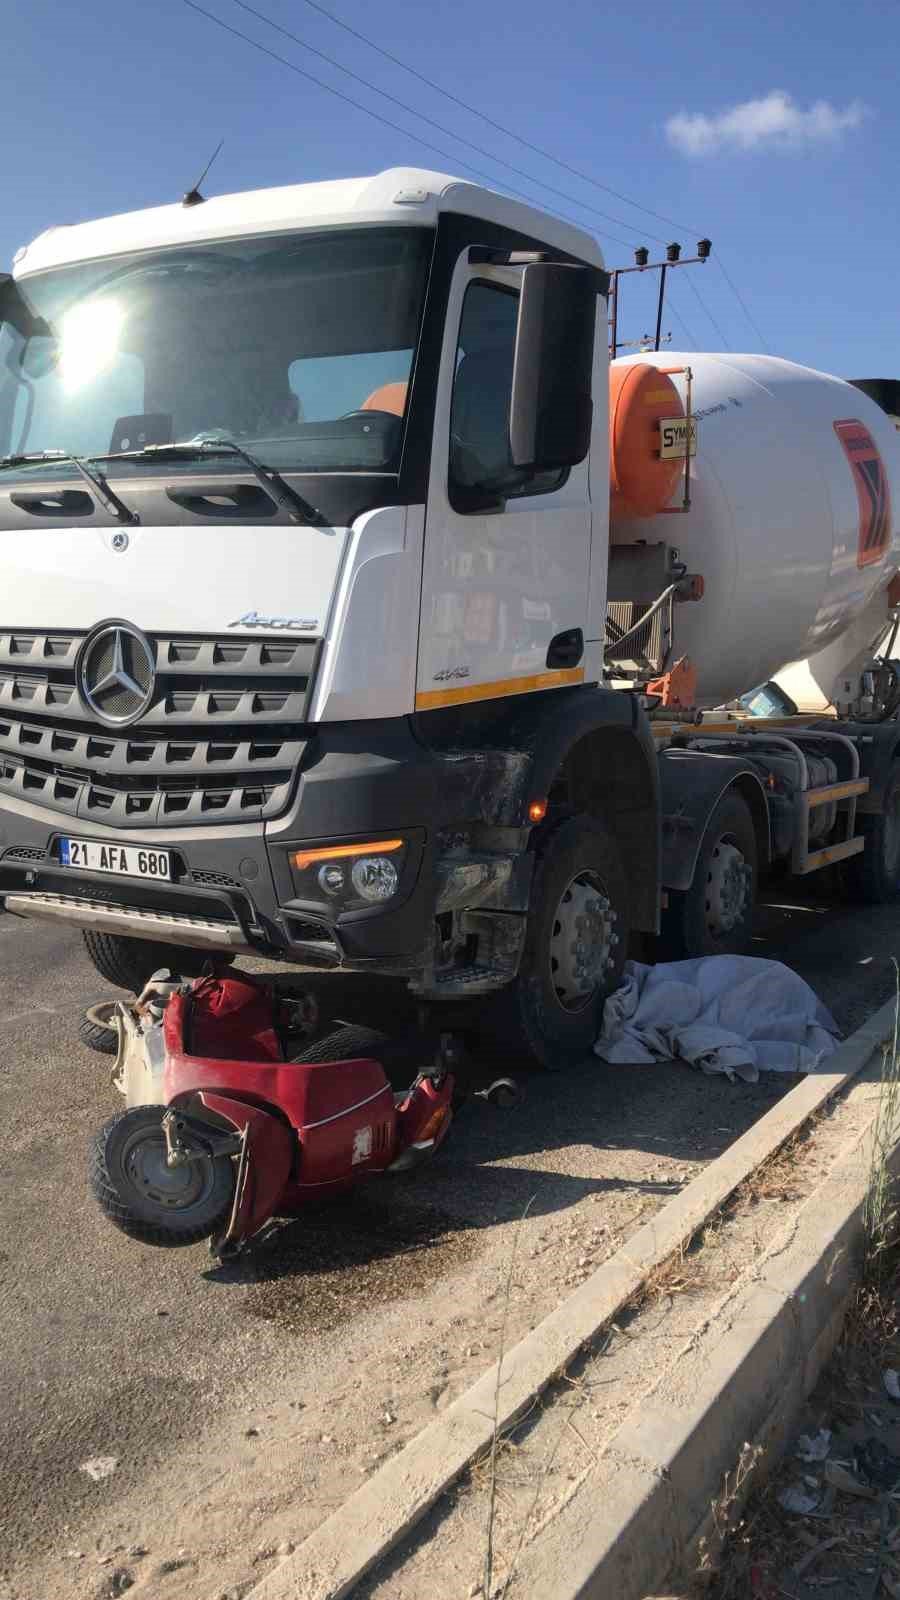 Beton mikseri ile çarpışan motosikletteki 2 kişi hayatını kaybetti